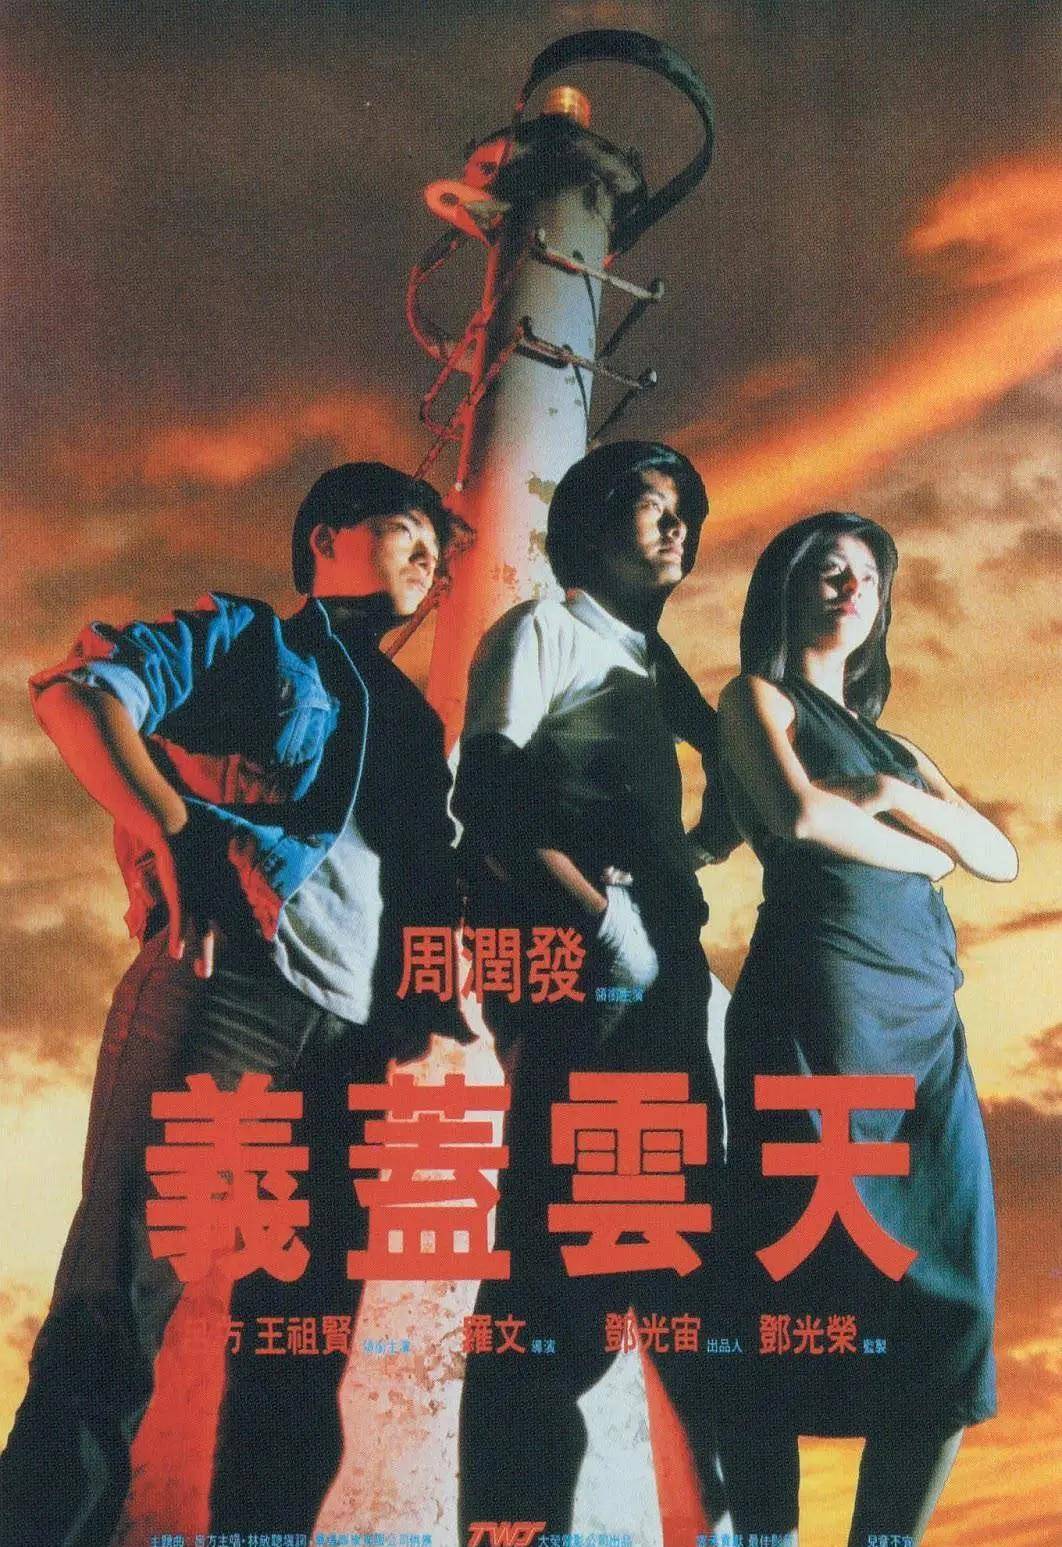 1986年,王祖贤与周润发首次合作,因一场侵犯戏备受争议